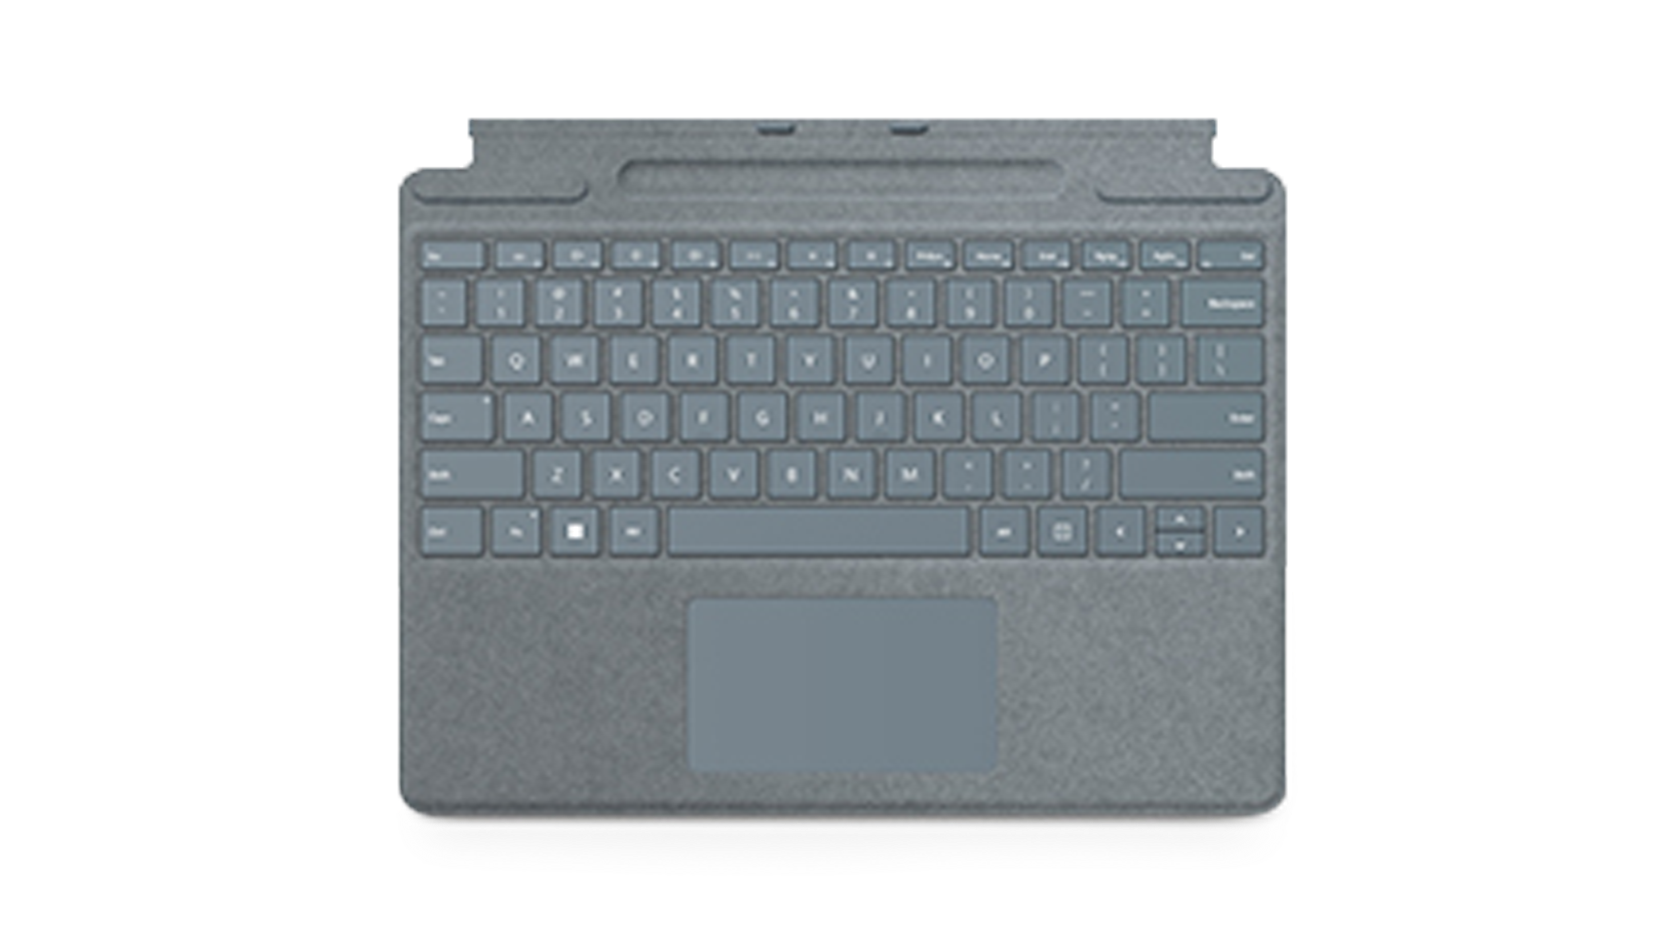 展示 Surface 實體鍵盤保護蓋。